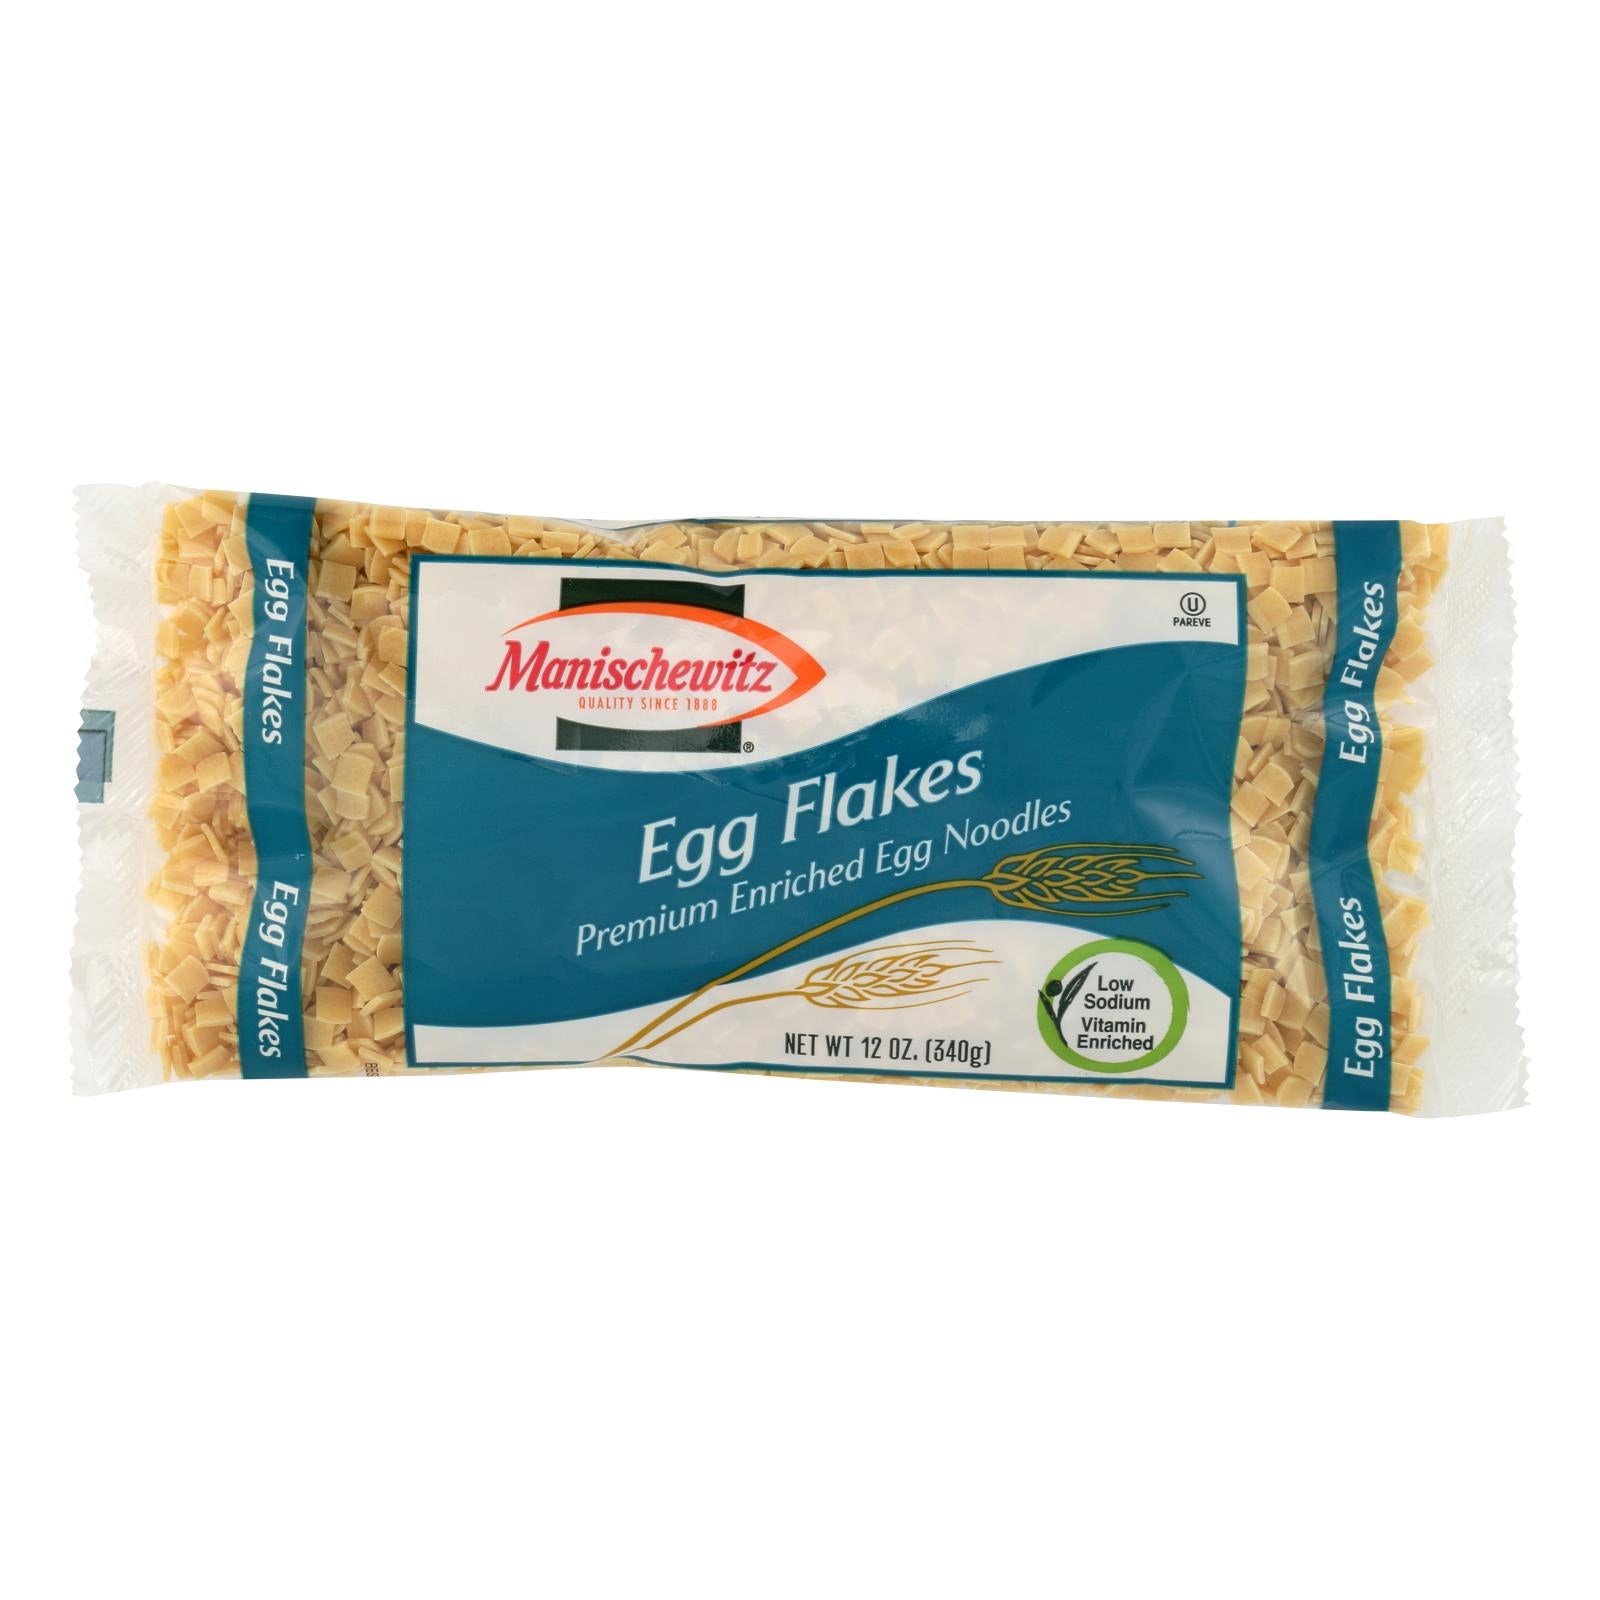 Manischewitz, Manischewitz Egg Flakes Noodles - Caisse de 12 - 12 OZ